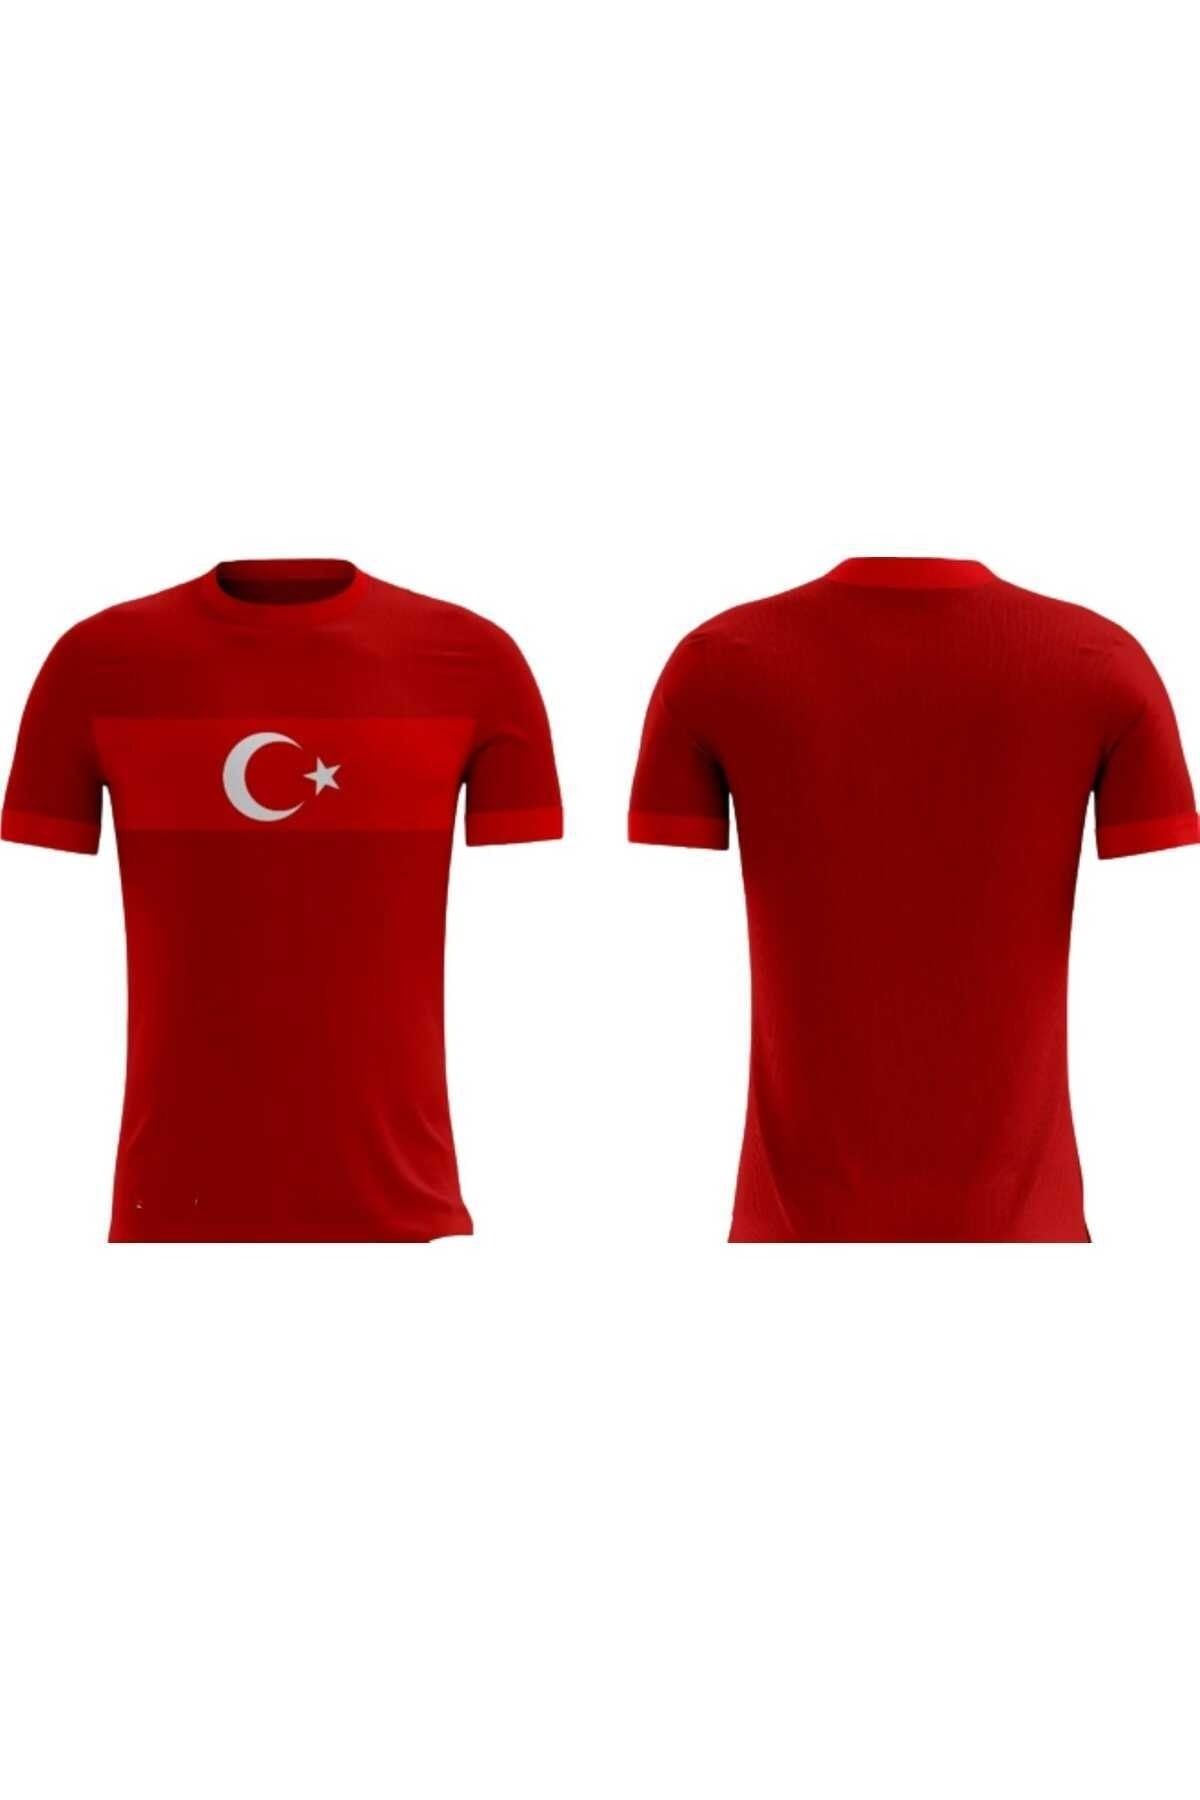 emre spor Futbol Forması Türkiye Forması Özel Üretim Tek Üst